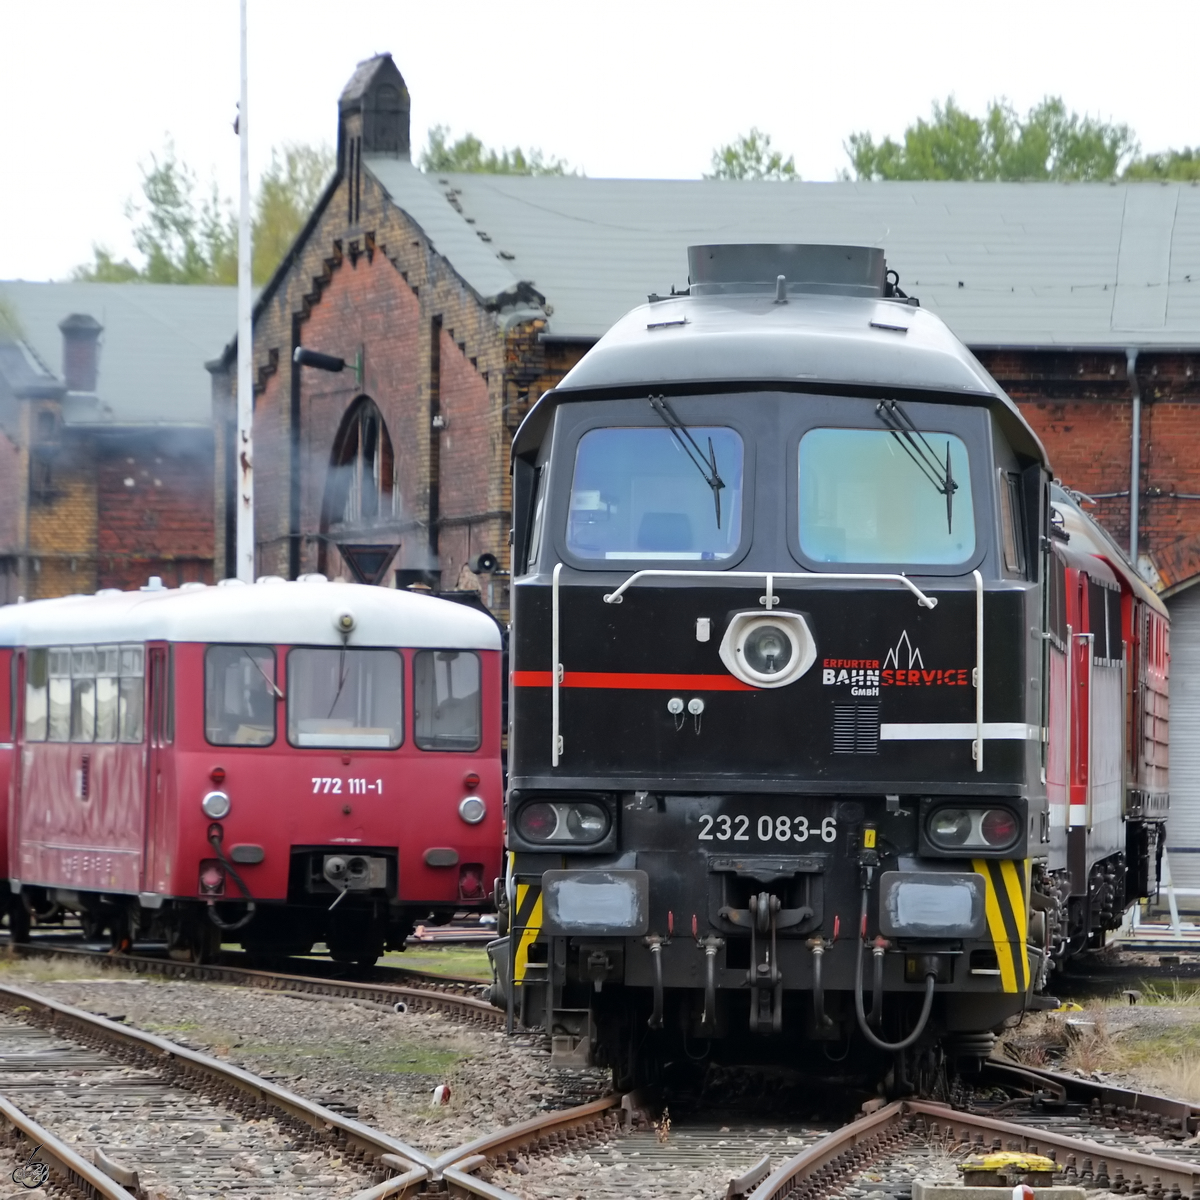 Ludmilla 232 083-6 der Erfurter Bahnservice GmbH und die Ferkeltaxe 772 111-1 standen auf dem Gelände des sächsischen Eisenbahnmuseums Chemnitz-Hilbersdorf.